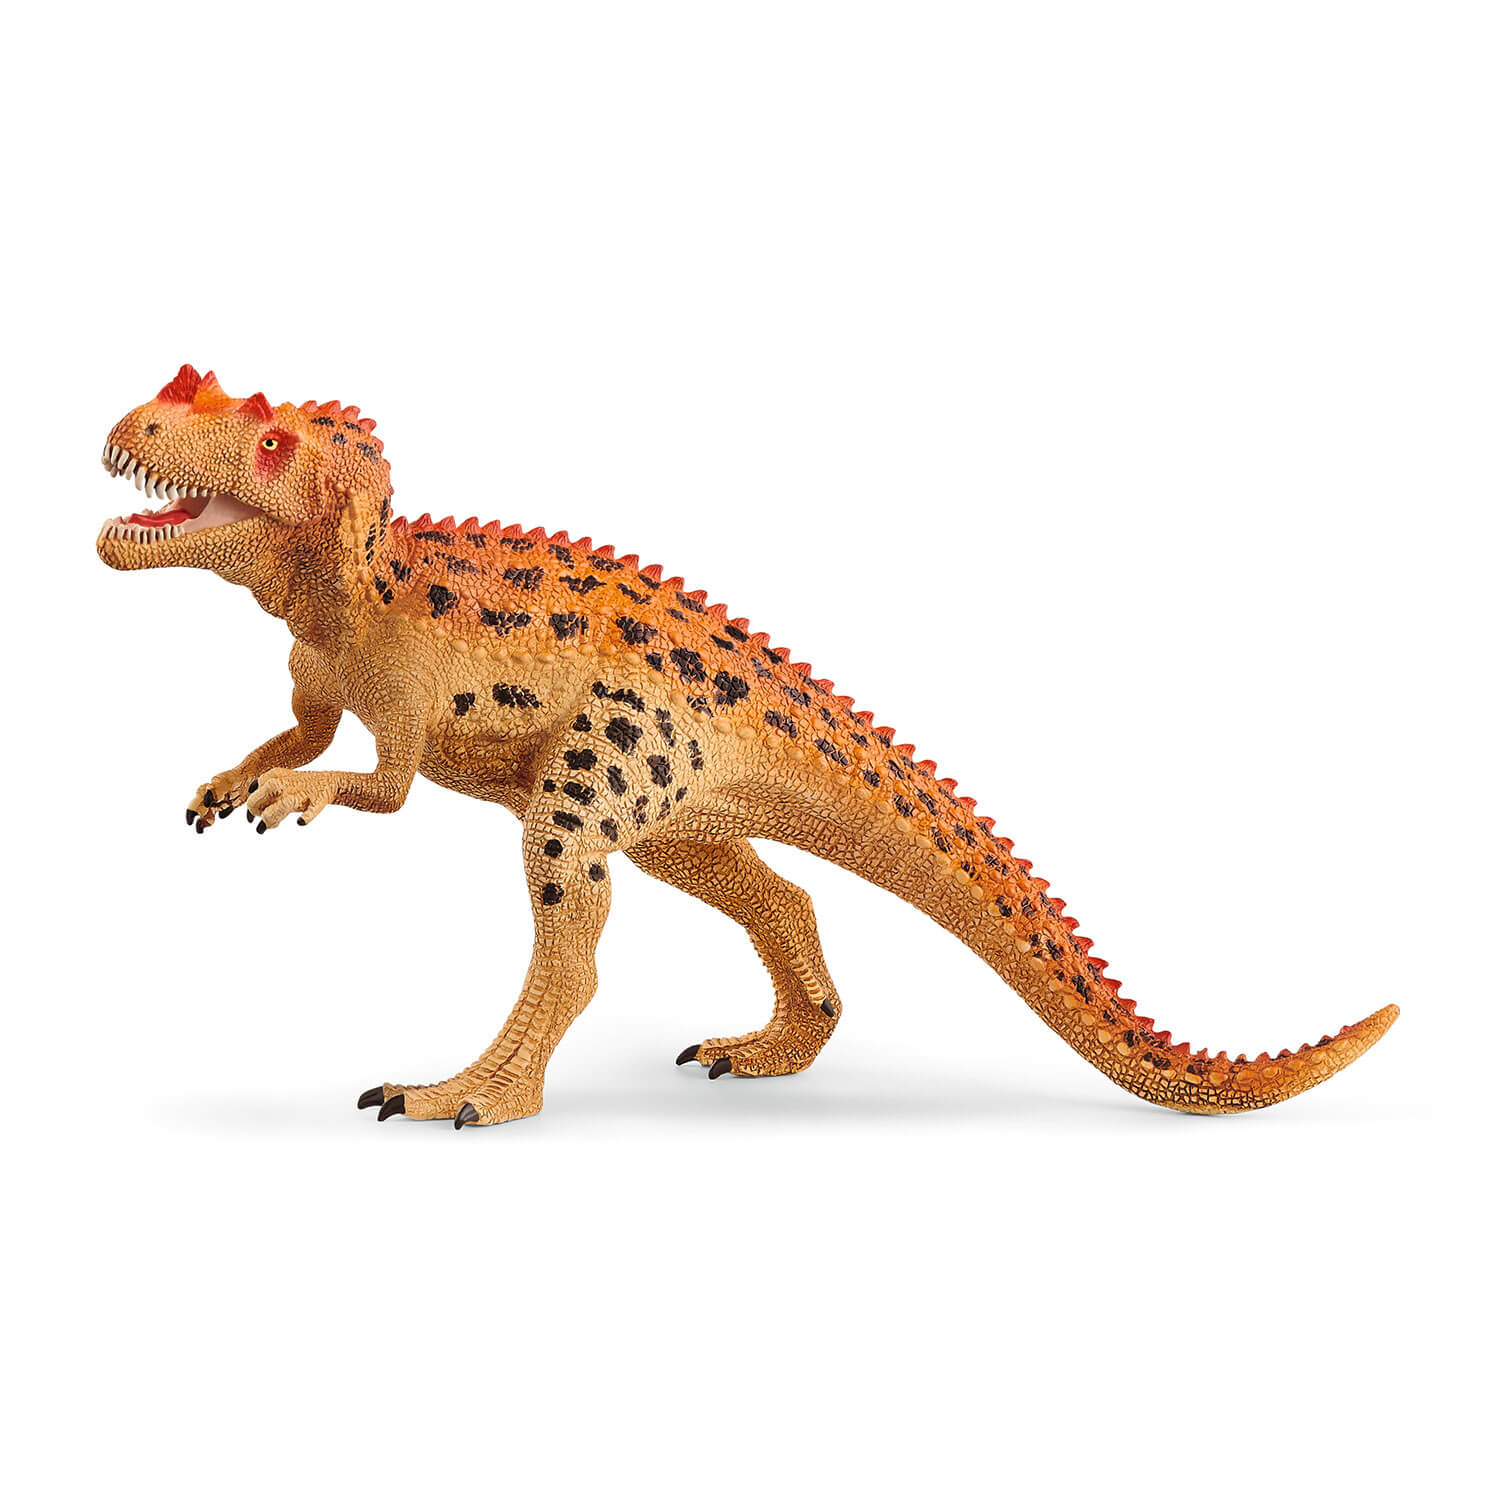 Schleich Dinosaurs Ceratosaurus Figure (15019)